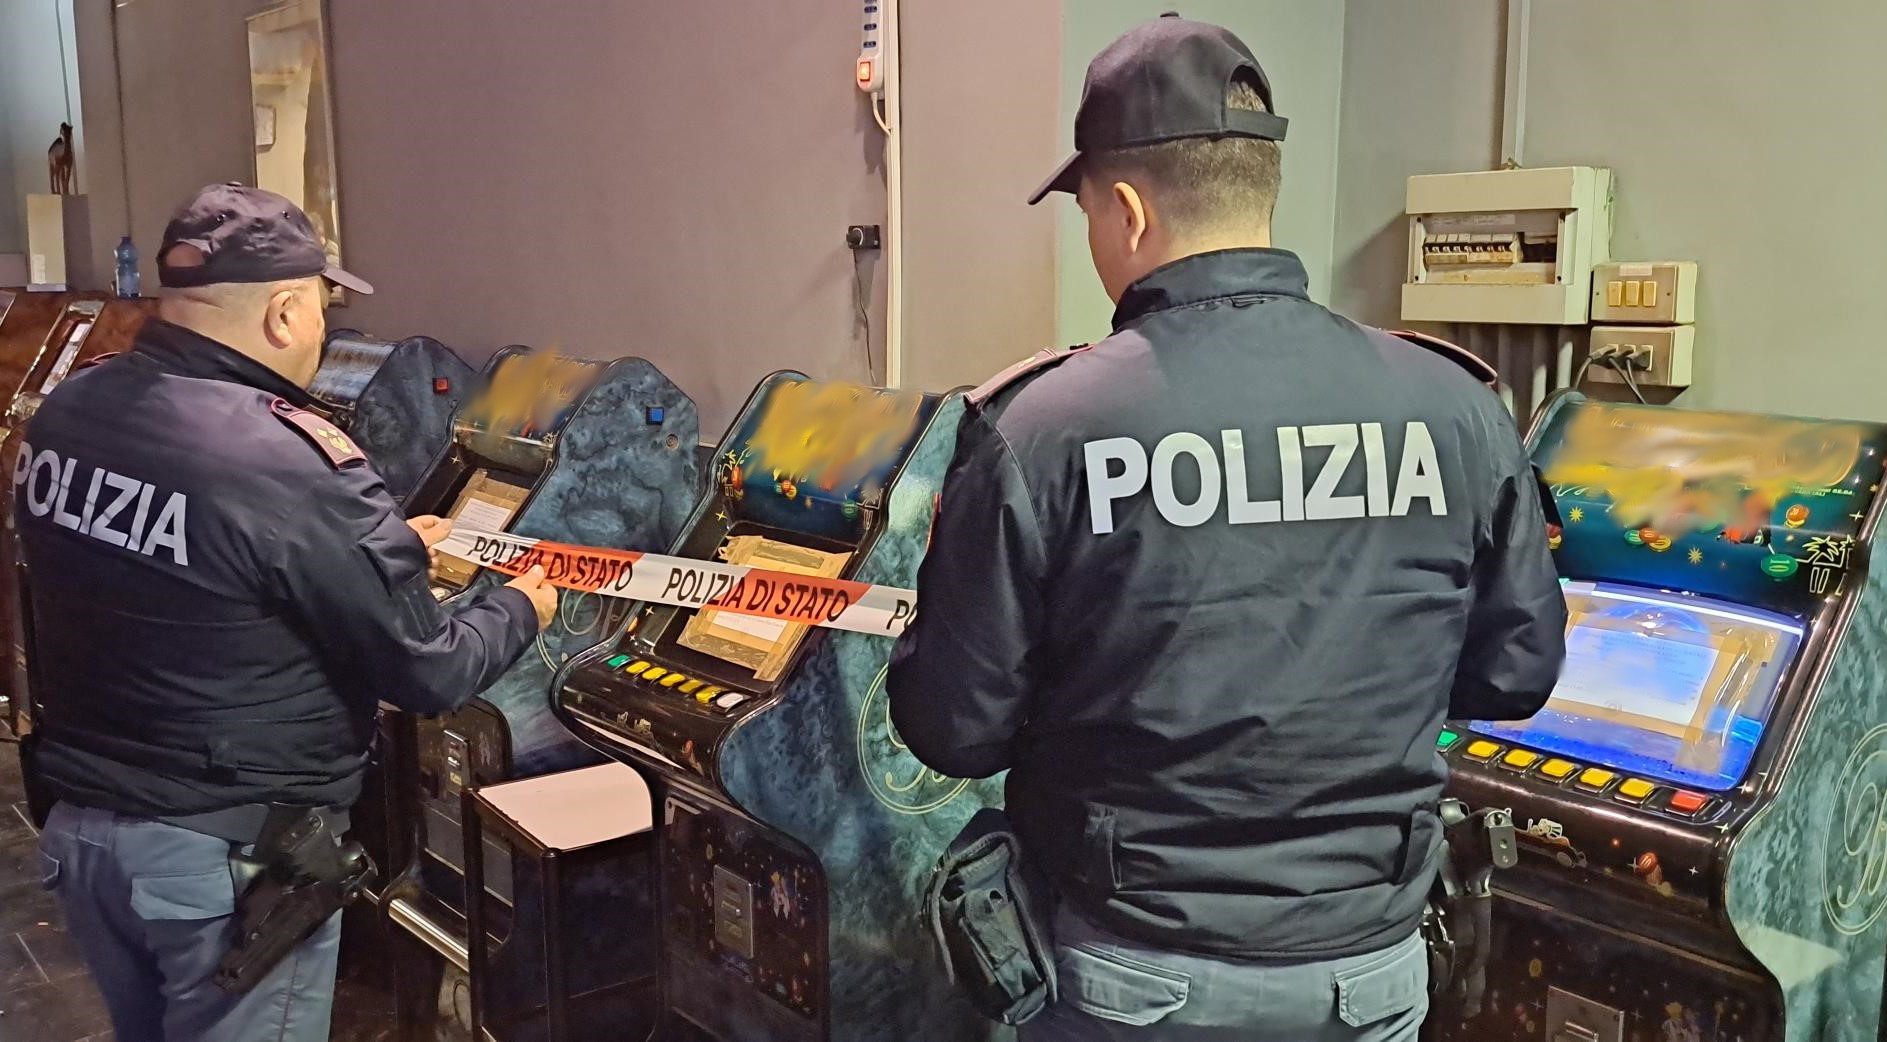 Sala giochi abusiva scoperta durante controlli sulla movida a Catania